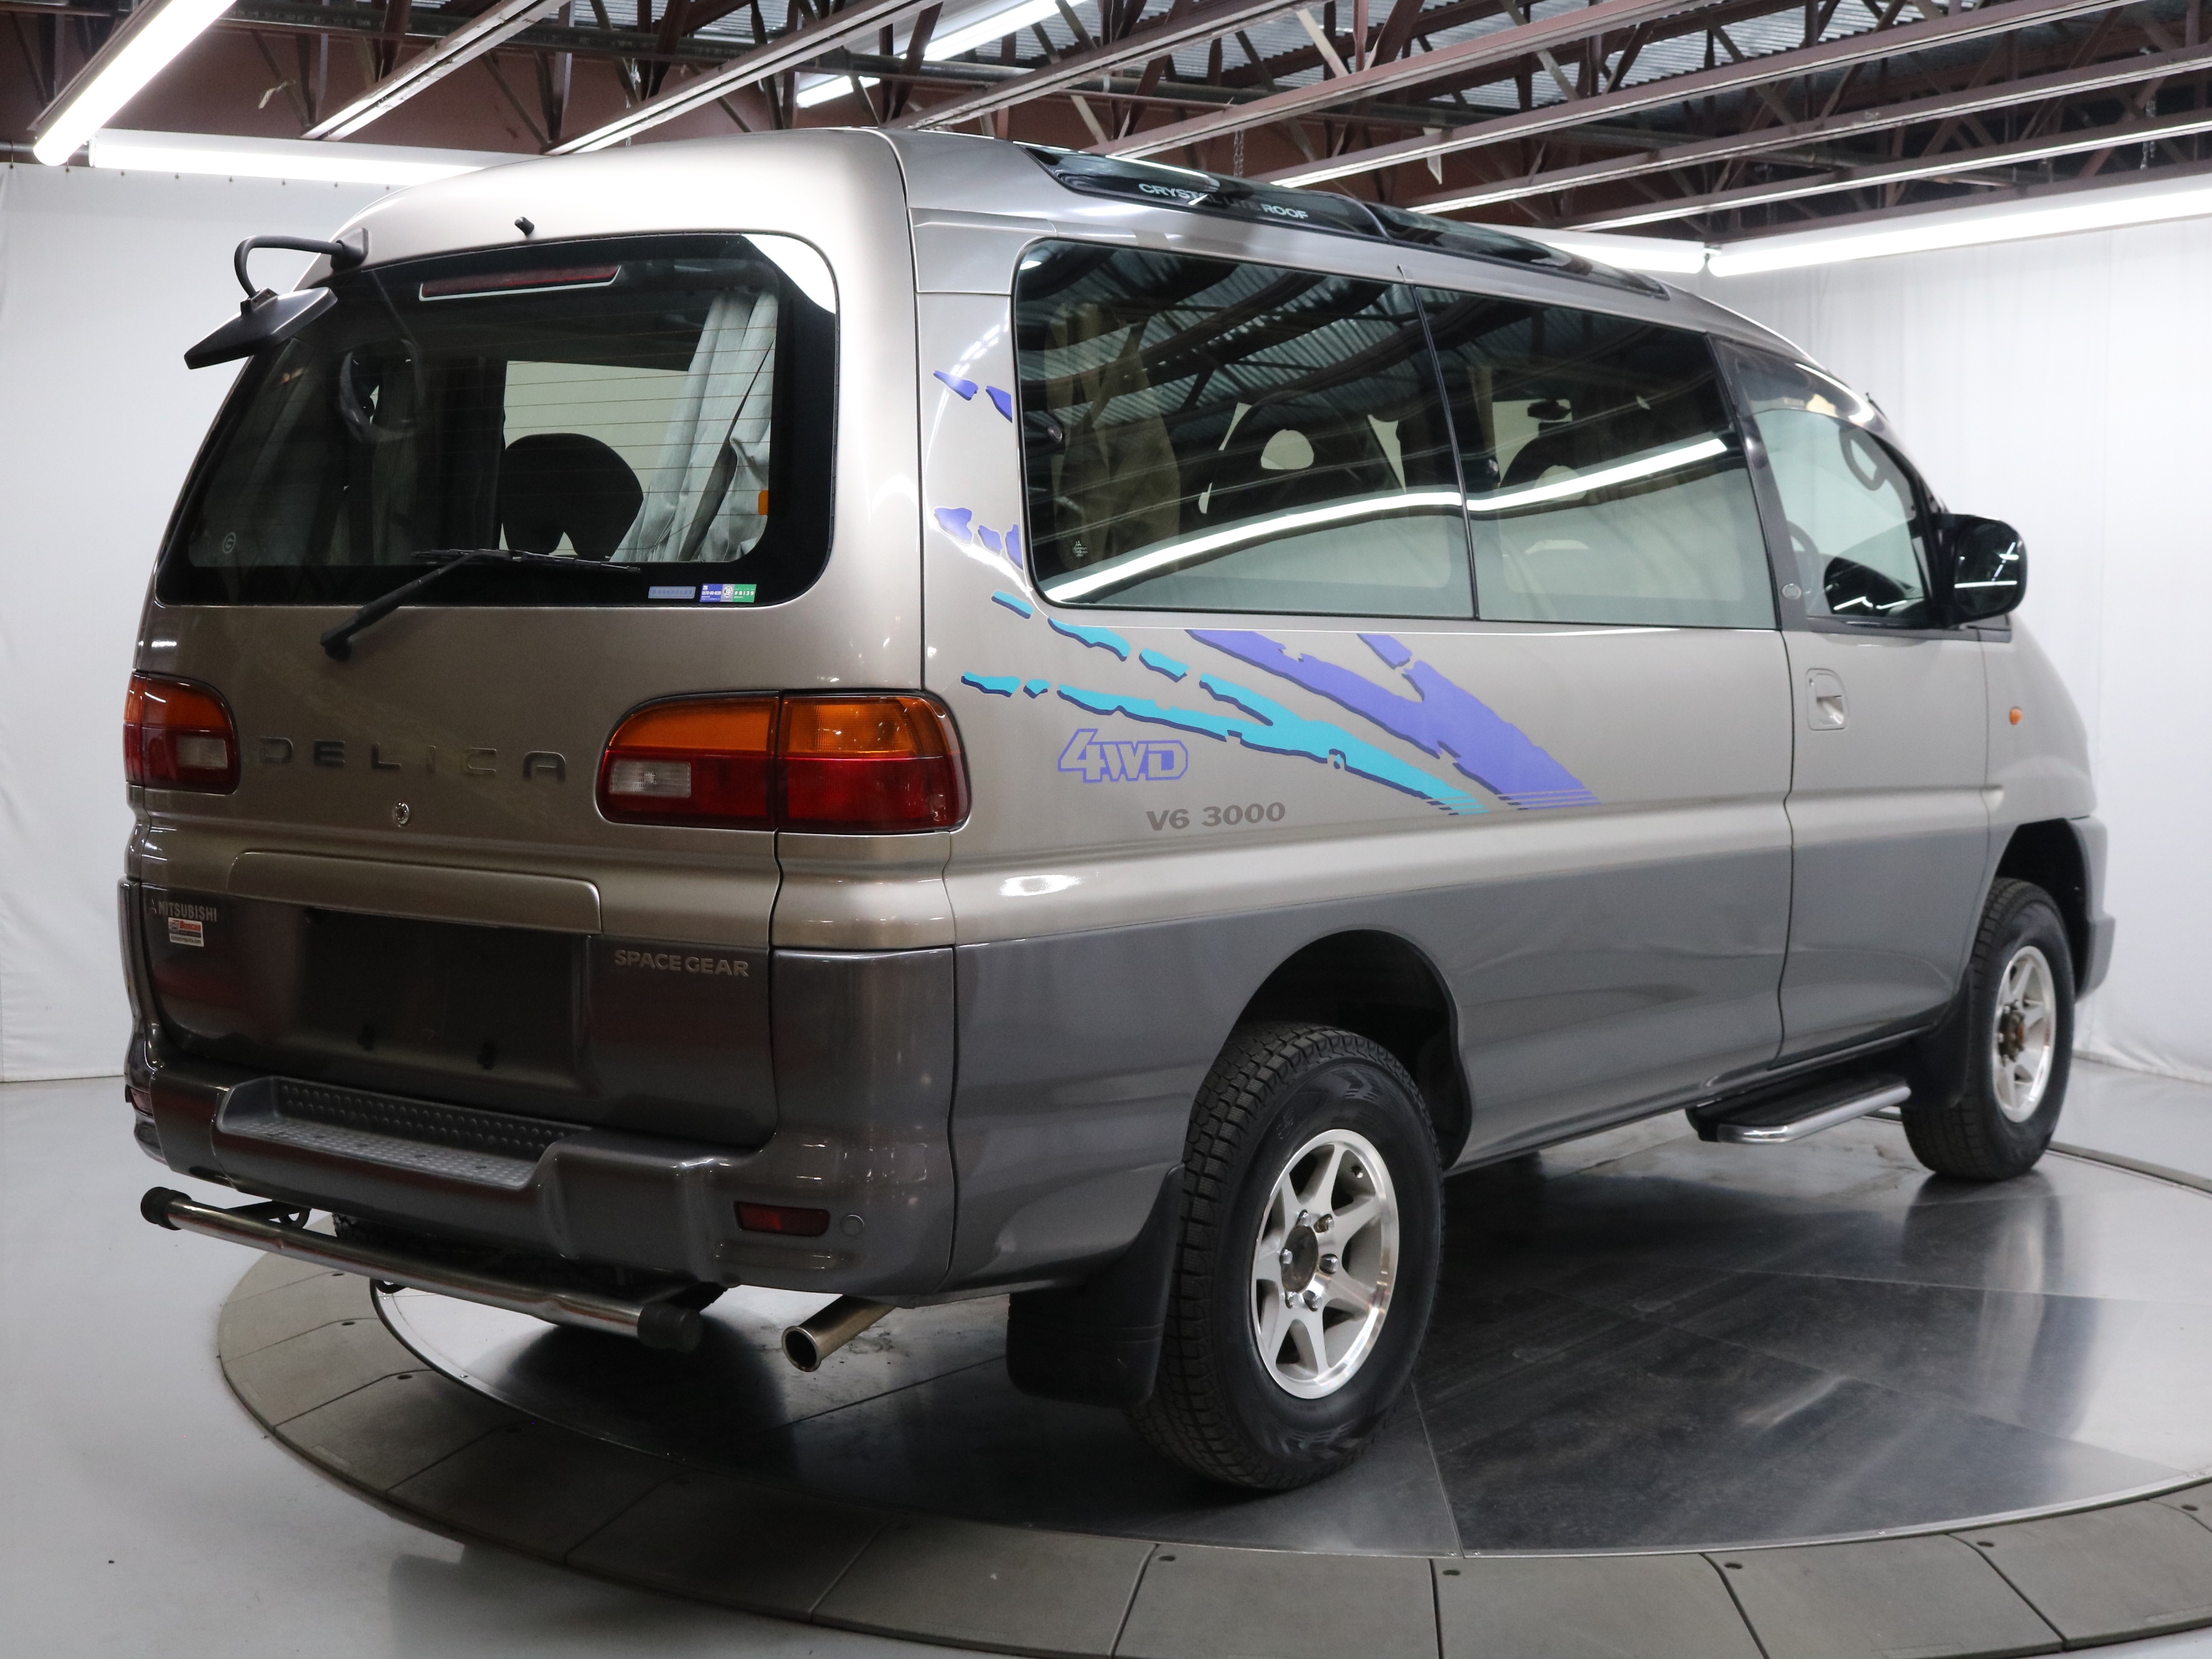 1997 Mitsubishi Delica 7